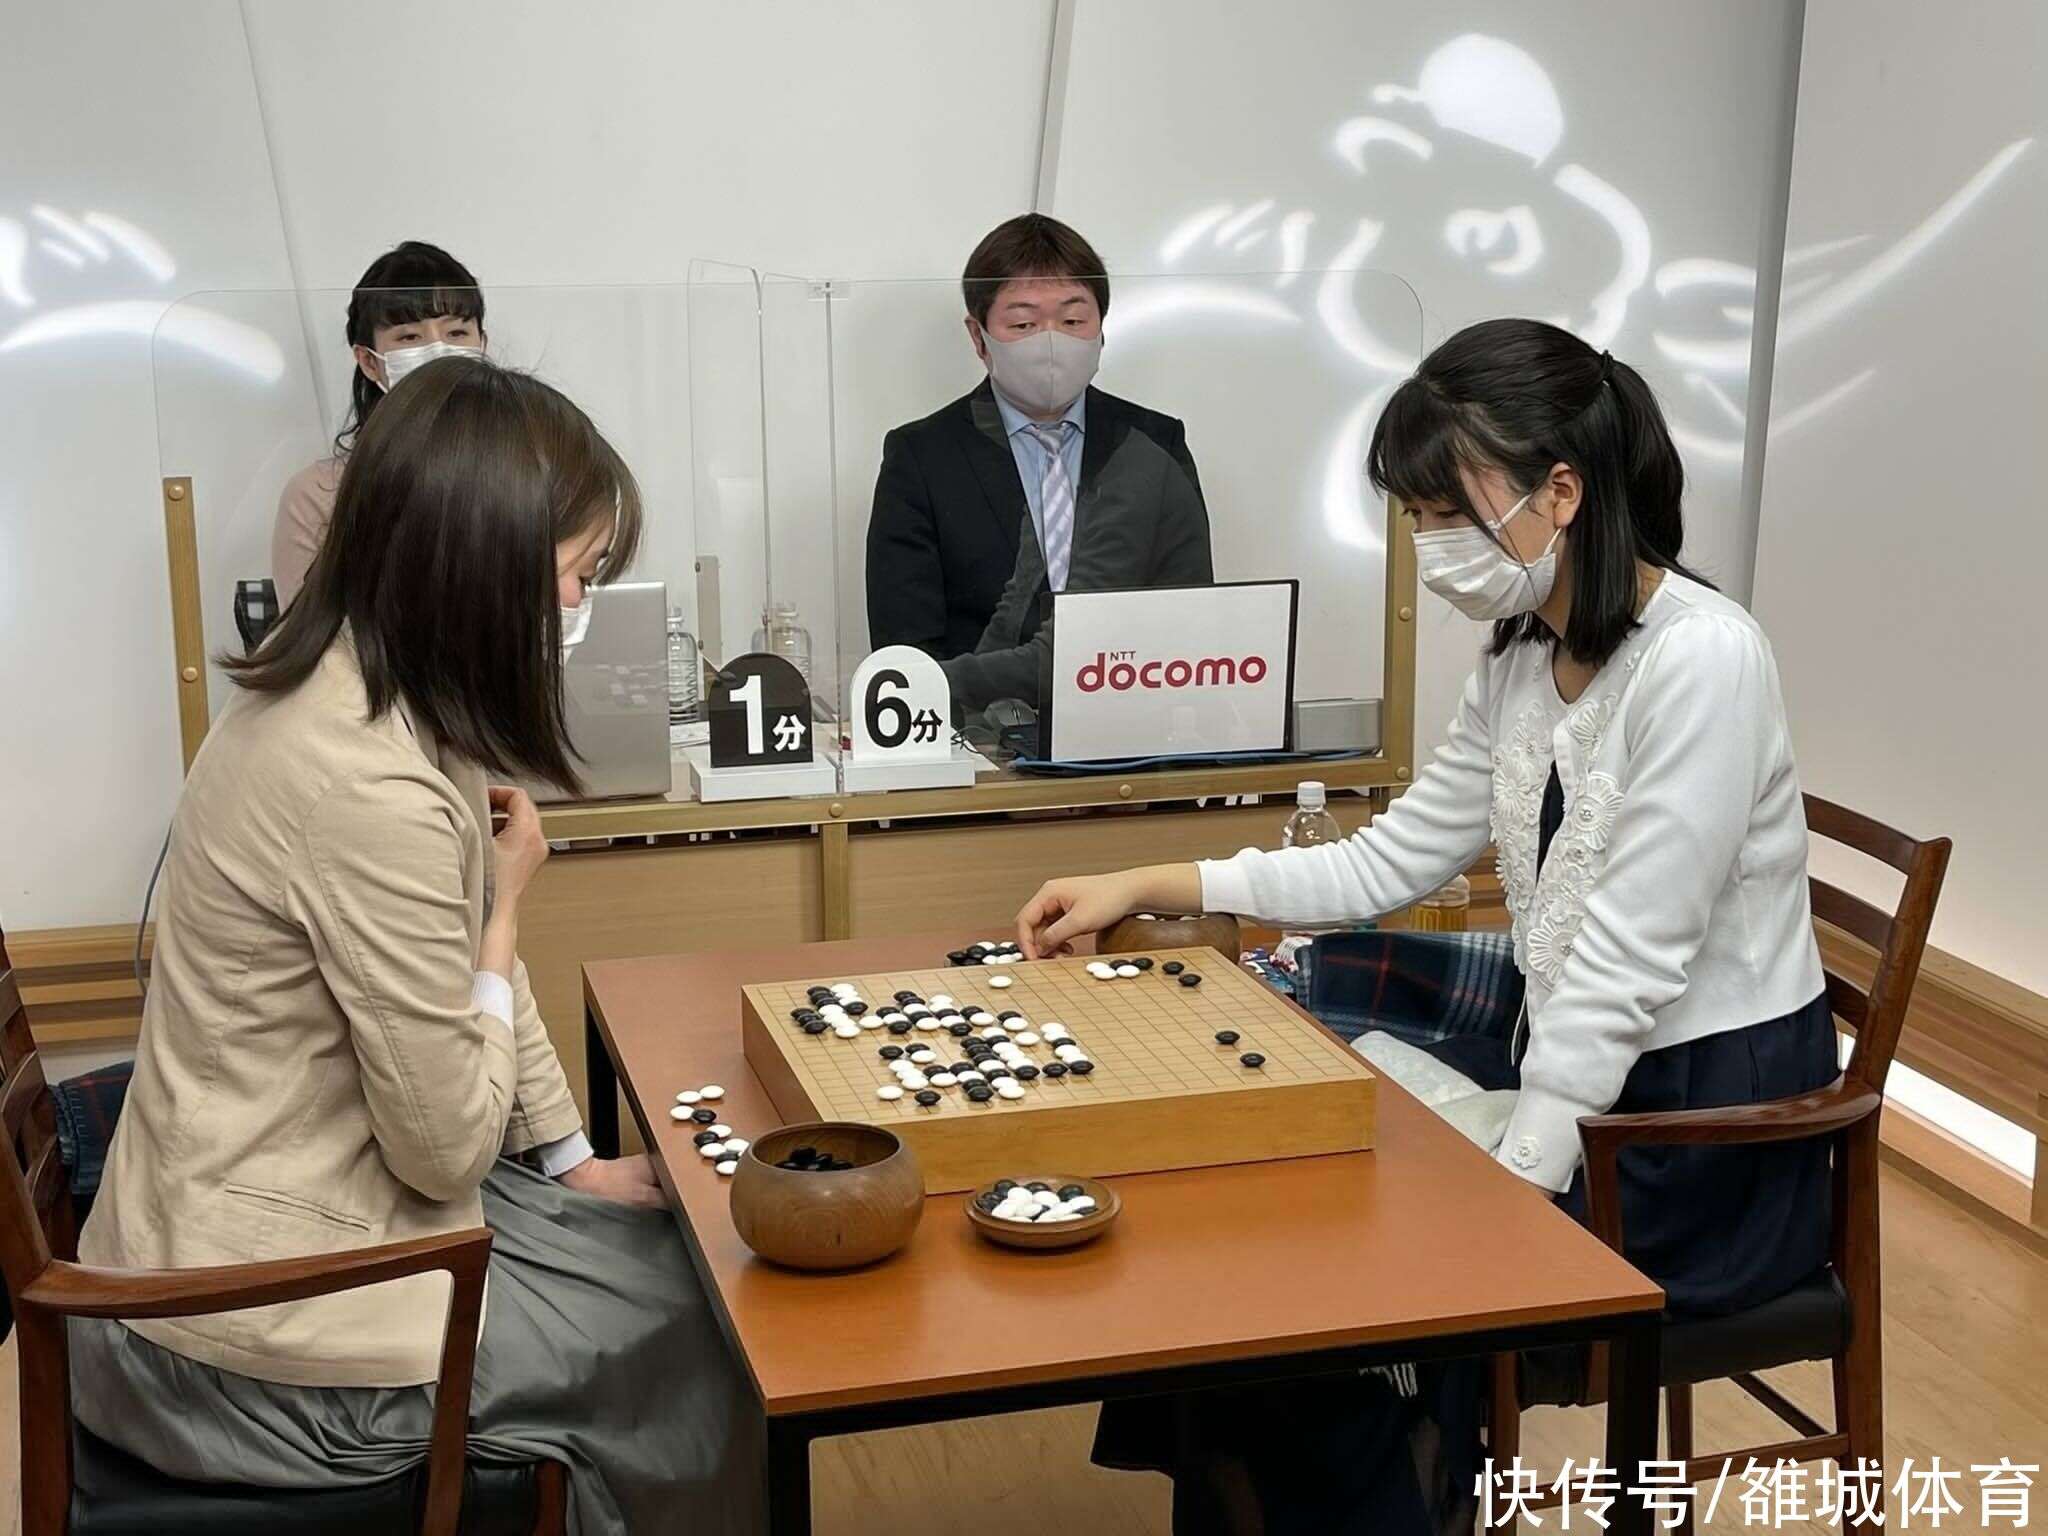 上野愛咲美奪回女流棋聖頭銜與藤澤裏菜壟斷日本五大女子棋戰 楠木軒